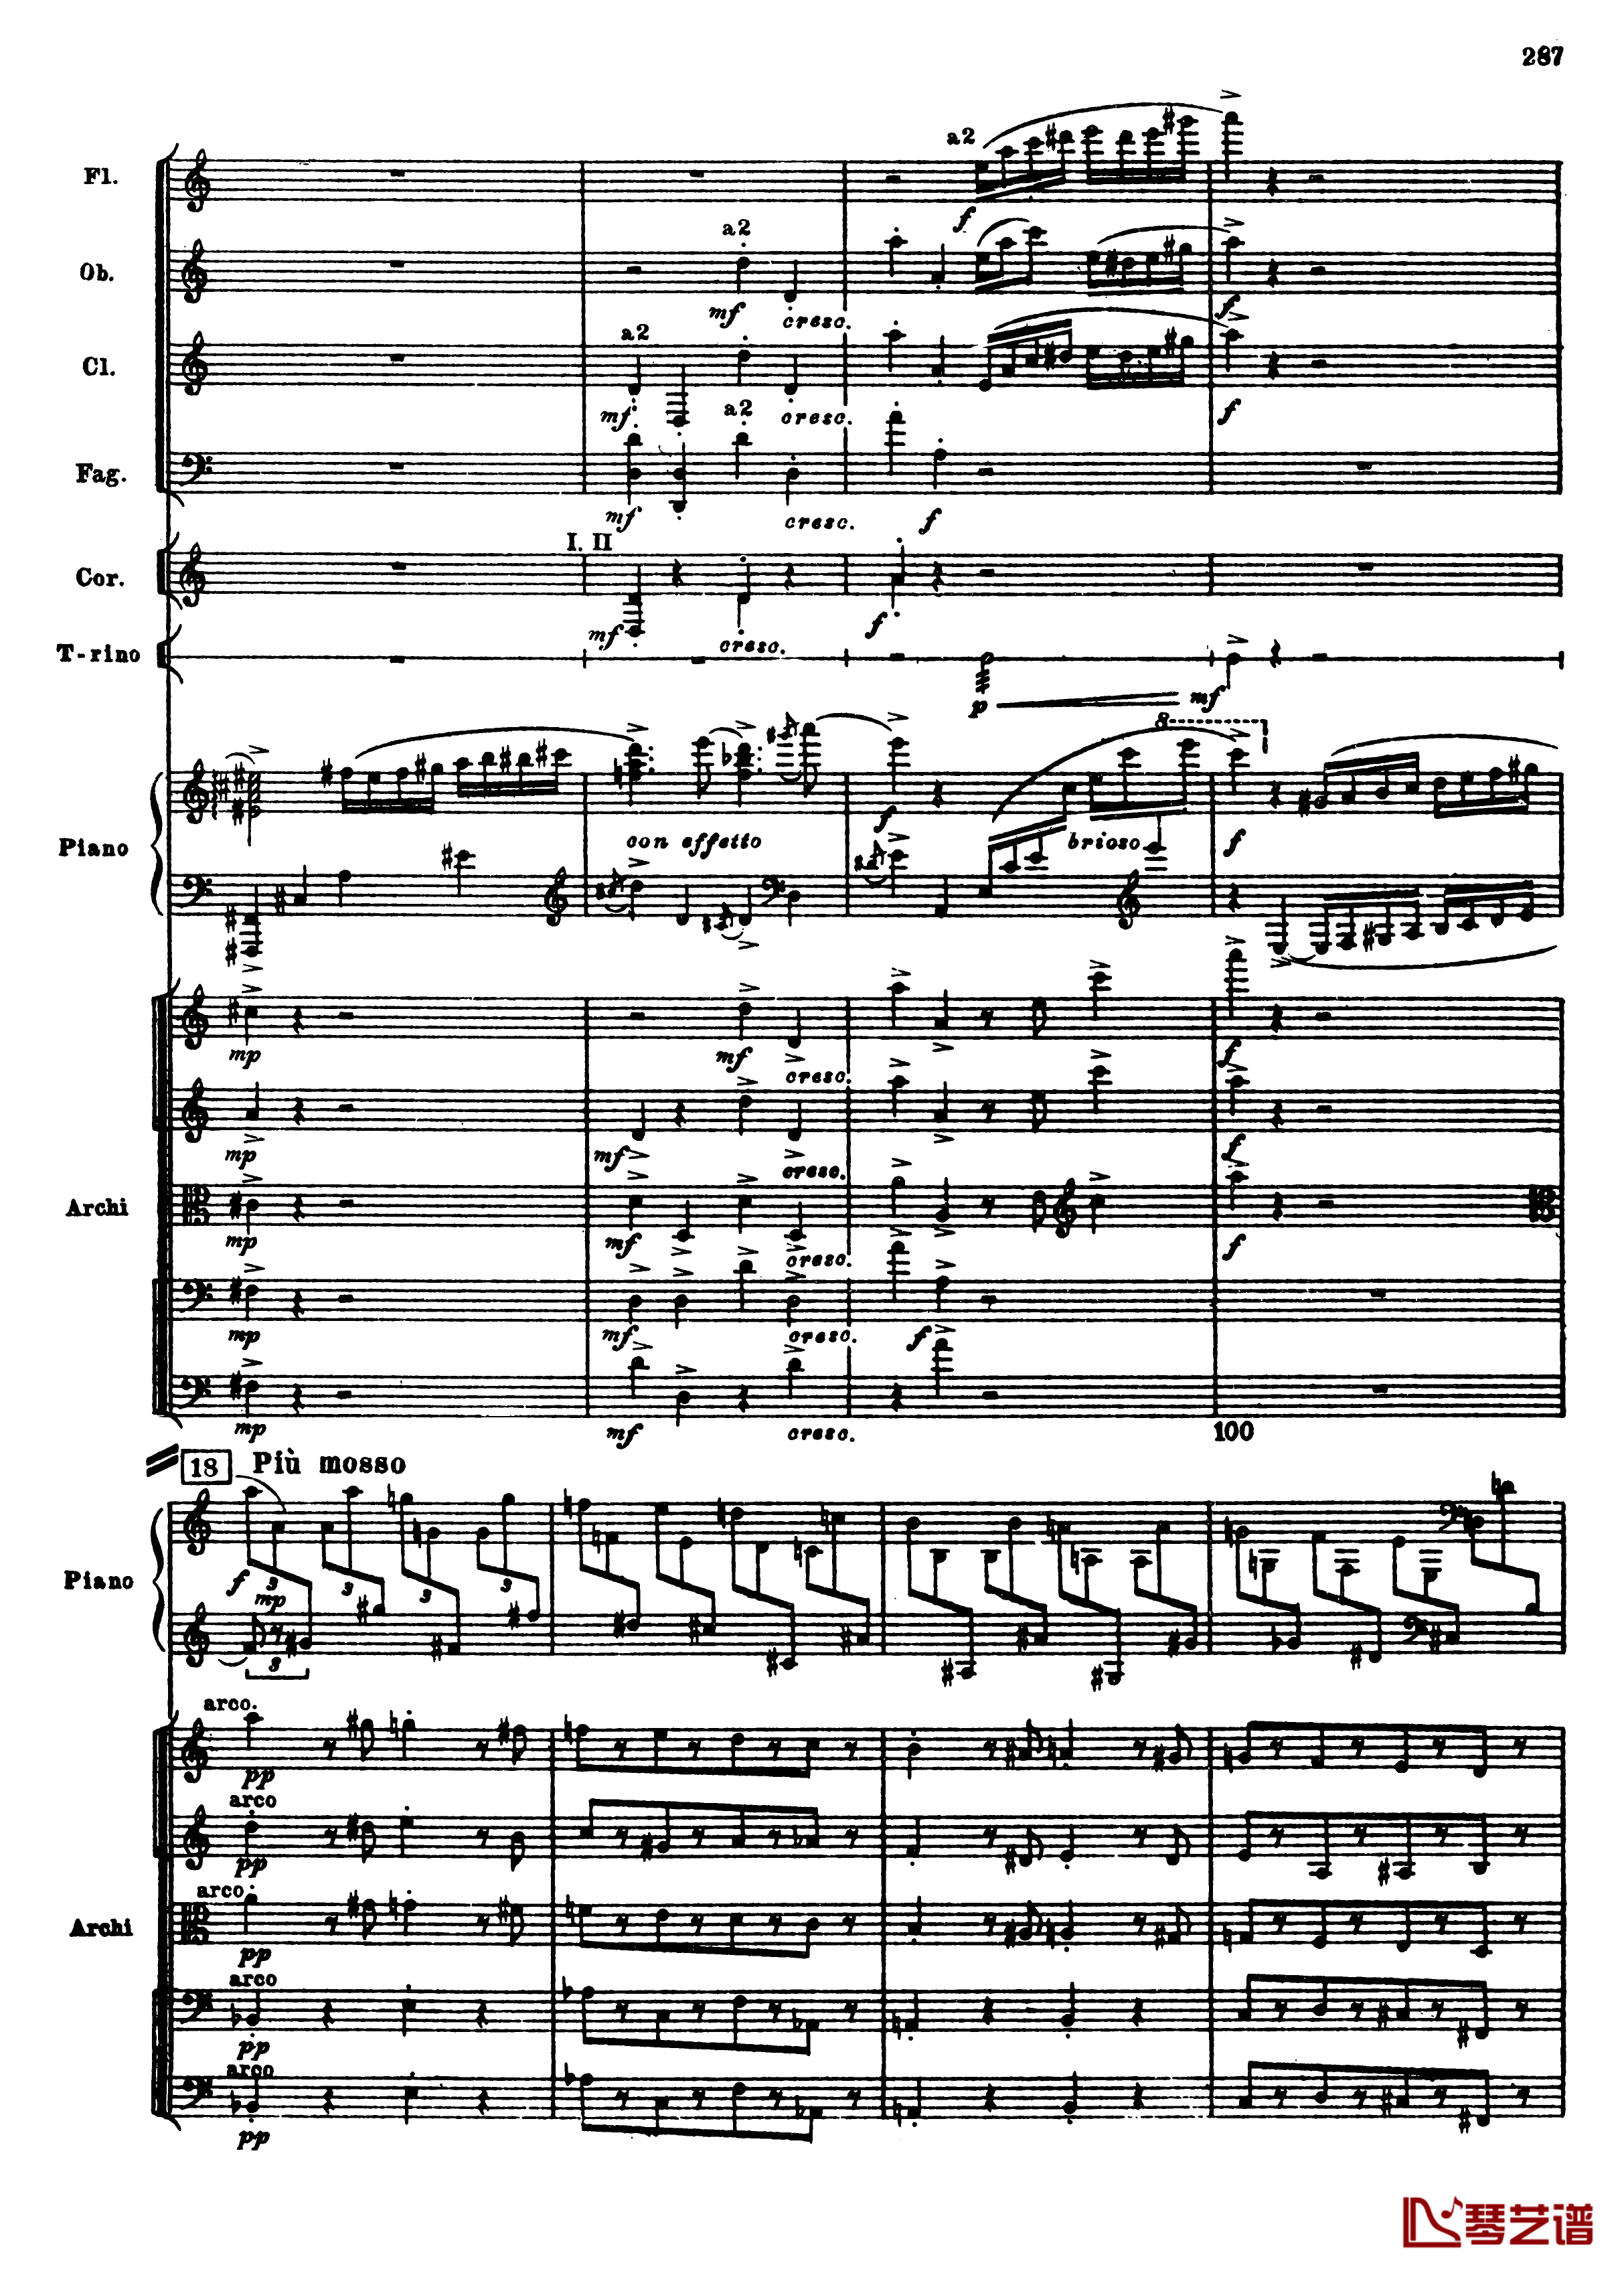 普罗科菲耶夫第三钢琴协奏曲钢琴谱-总谱-普罗科非耶夫19